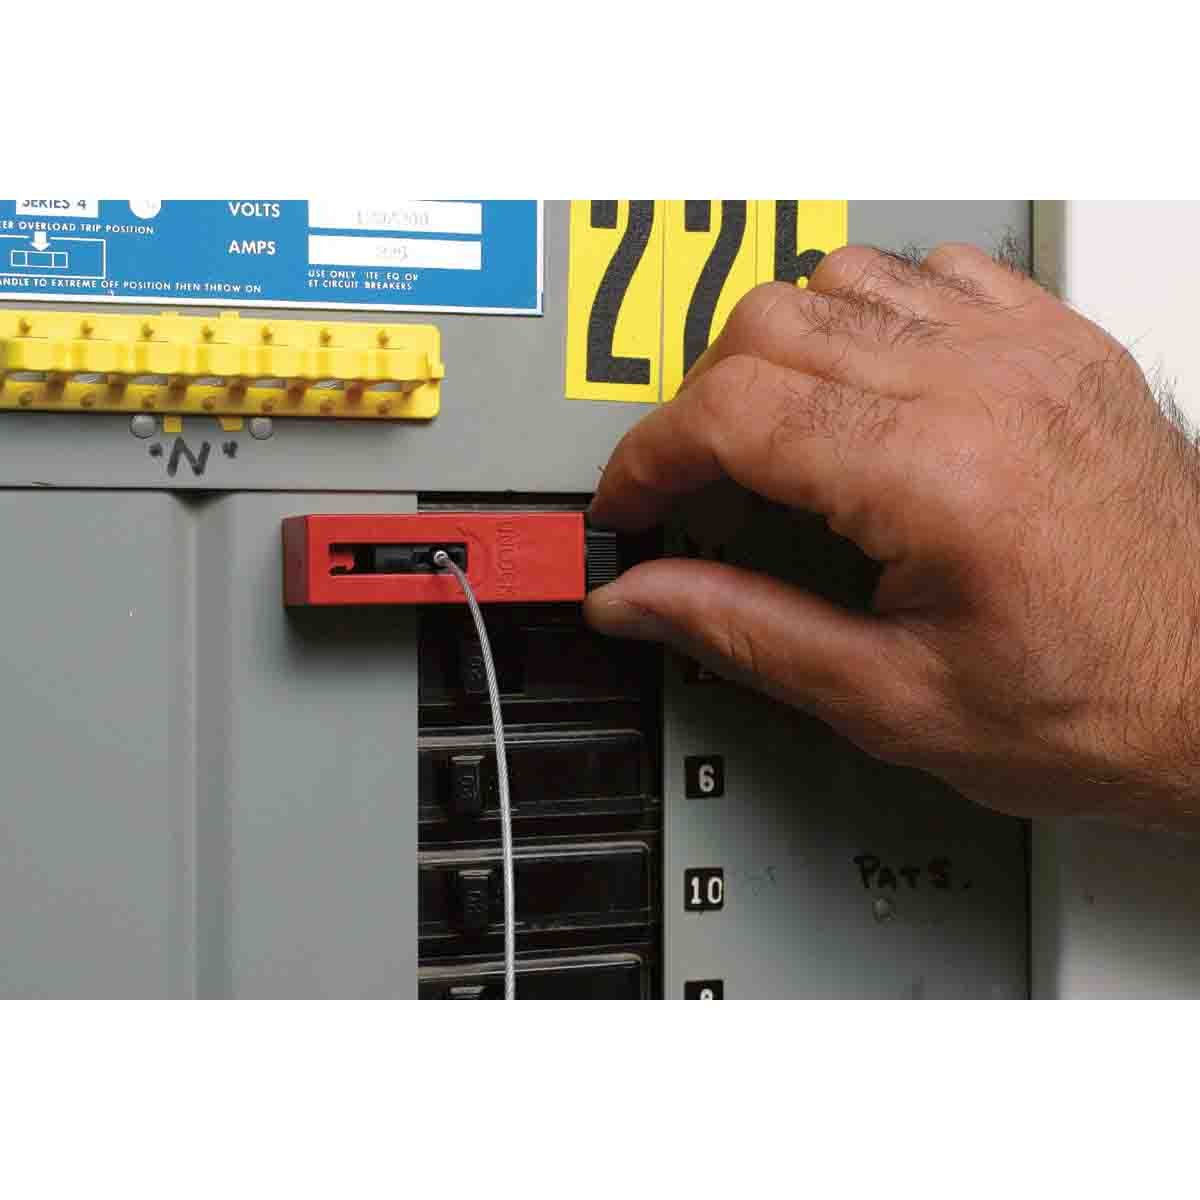 Блокираторы для выключателей EZ Panel Loc Clamp-On Brady блокиратор,длина троса может использоваться совместно с дополнительным самоклеящимся держателем,в упаковке, 0.61 м, 6 шт - 1